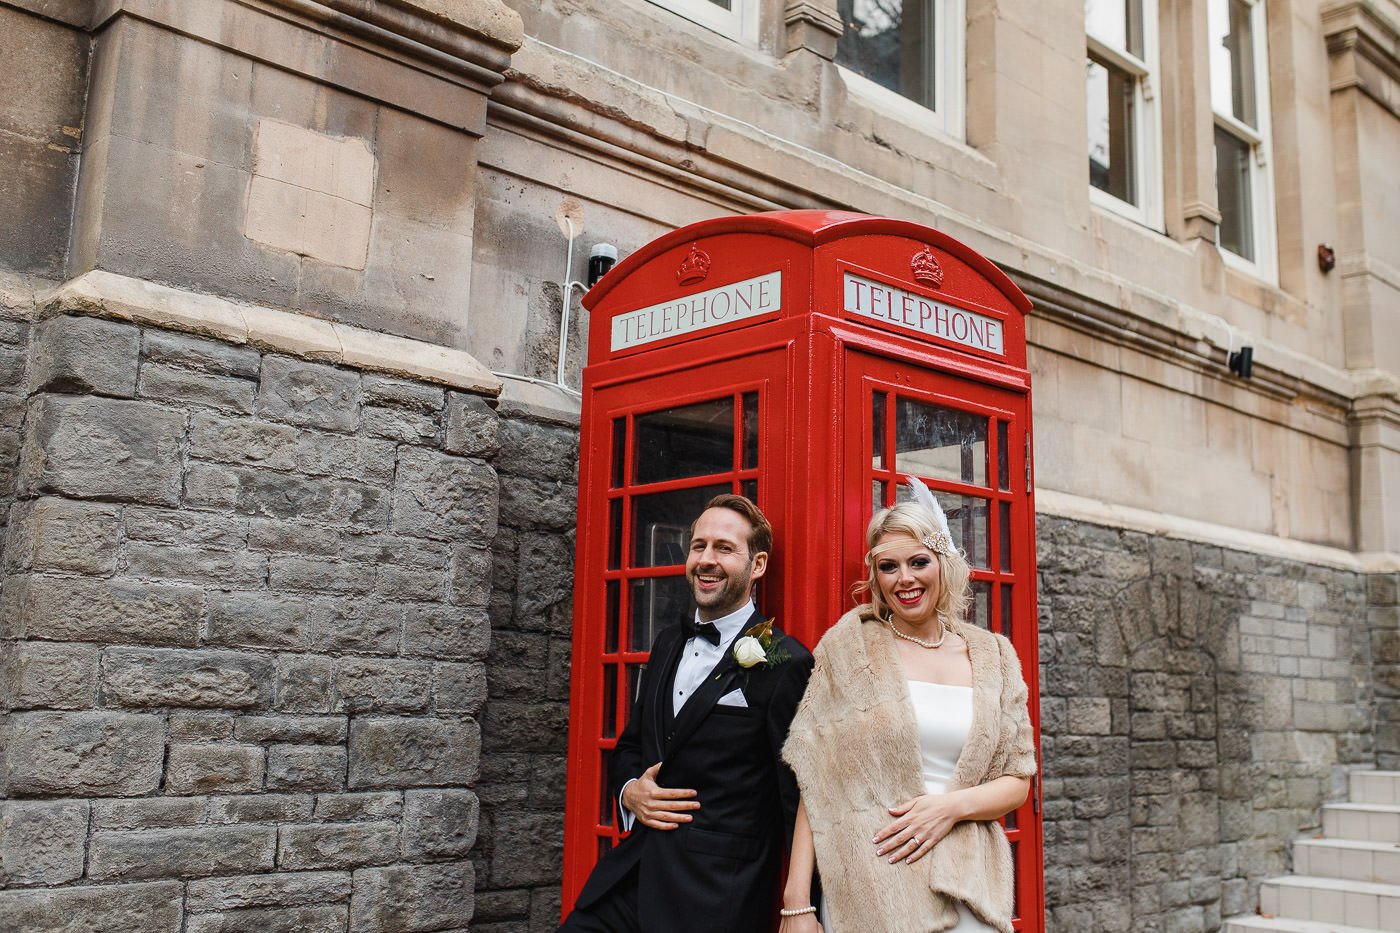 23-bride-groom-laughing-red-telephone-box.jpg